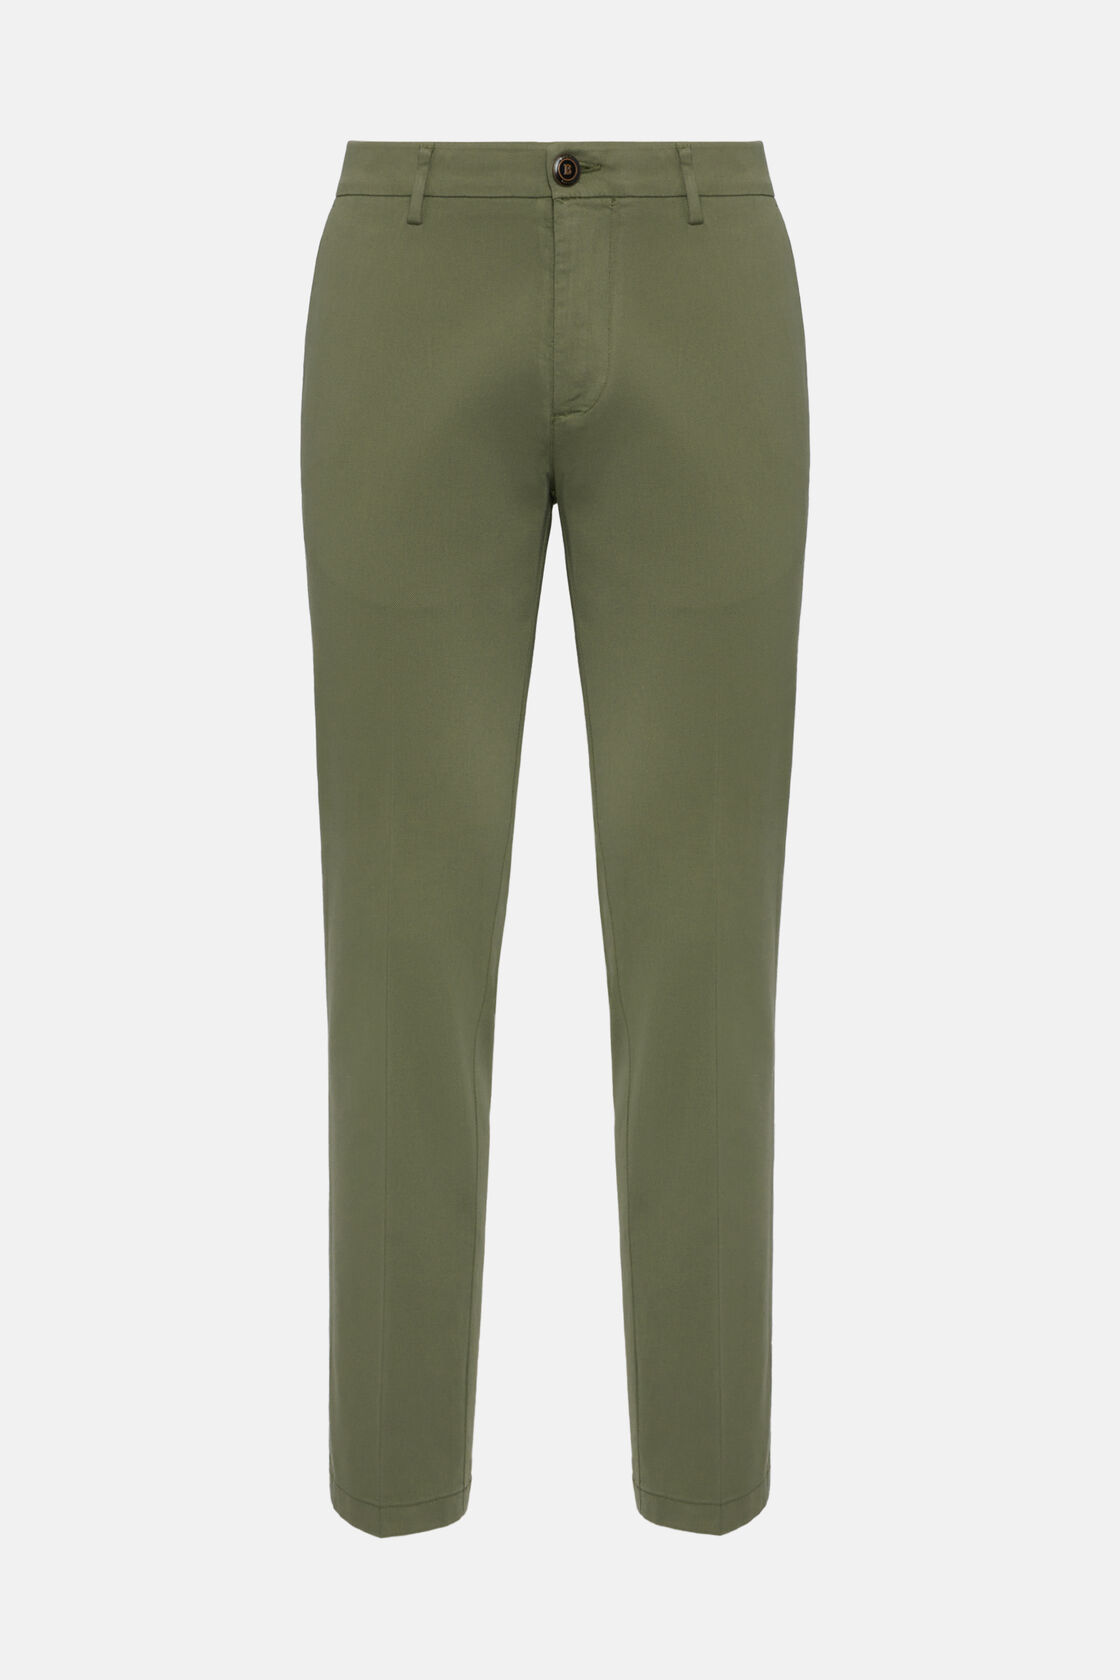 Elasztikus pamut/Tencel anyagú nadrág, Military Green, hi-res